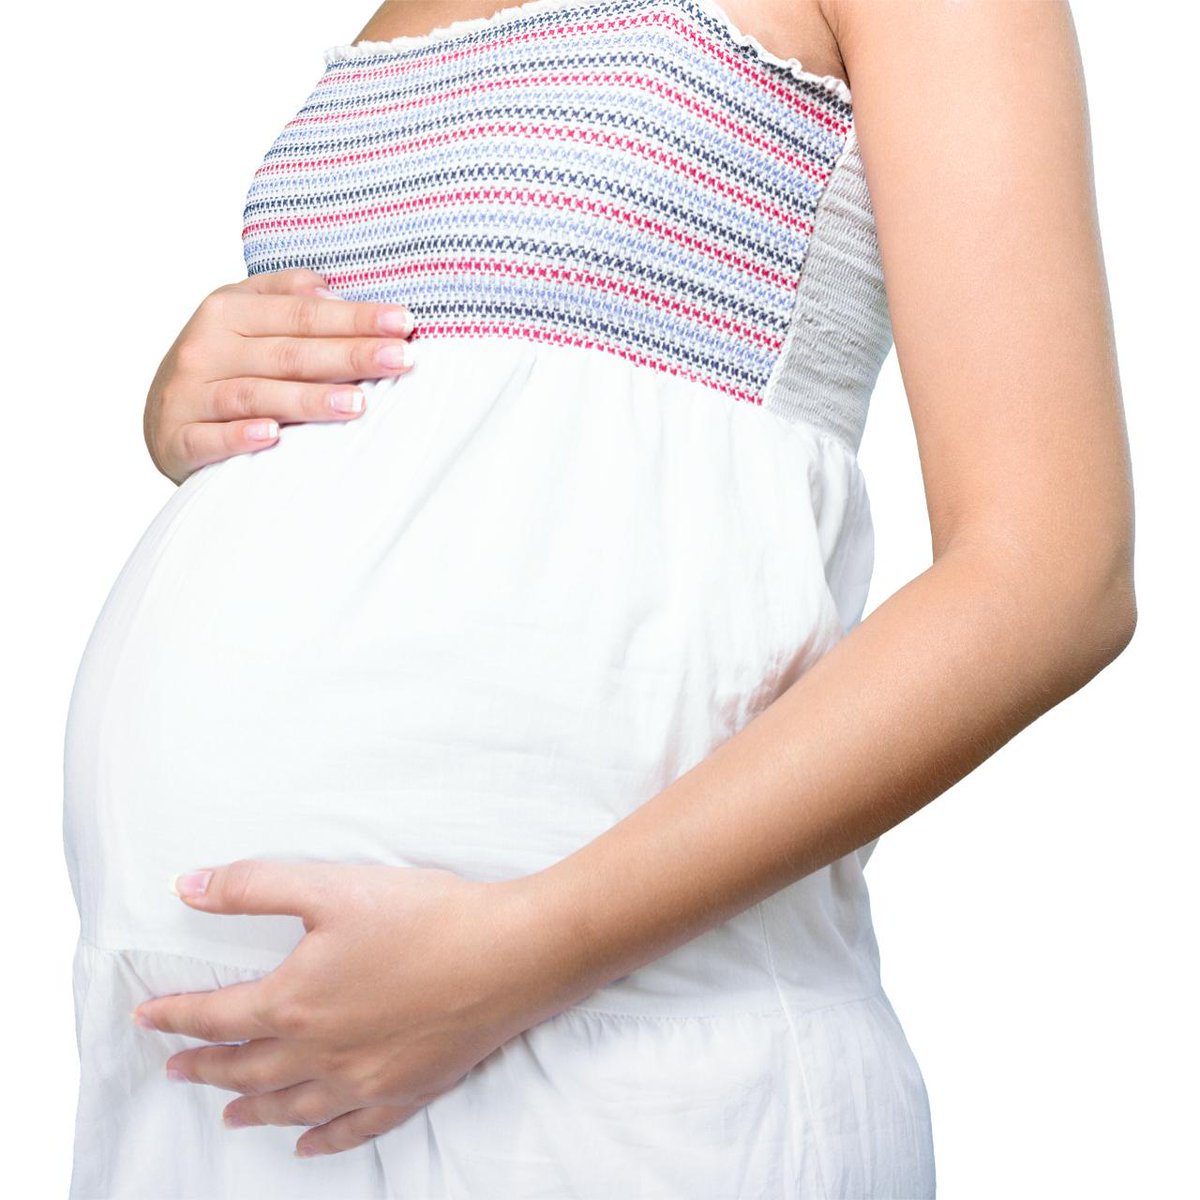 Cukrzyca ciążowa - Nie trać zdrowia na nieefektywne terapie - Zaufaj Naszej wiedzy i doświadczeniu!

#ciąża #aktywnaciąża #ciążakraków #ciążazagrożona #ciążazcukrzycą #cukrzyca #cukrzycaciążowa #cukrzycatypu1 #cukrzycatyp1  rfr.bz/t2t1cg